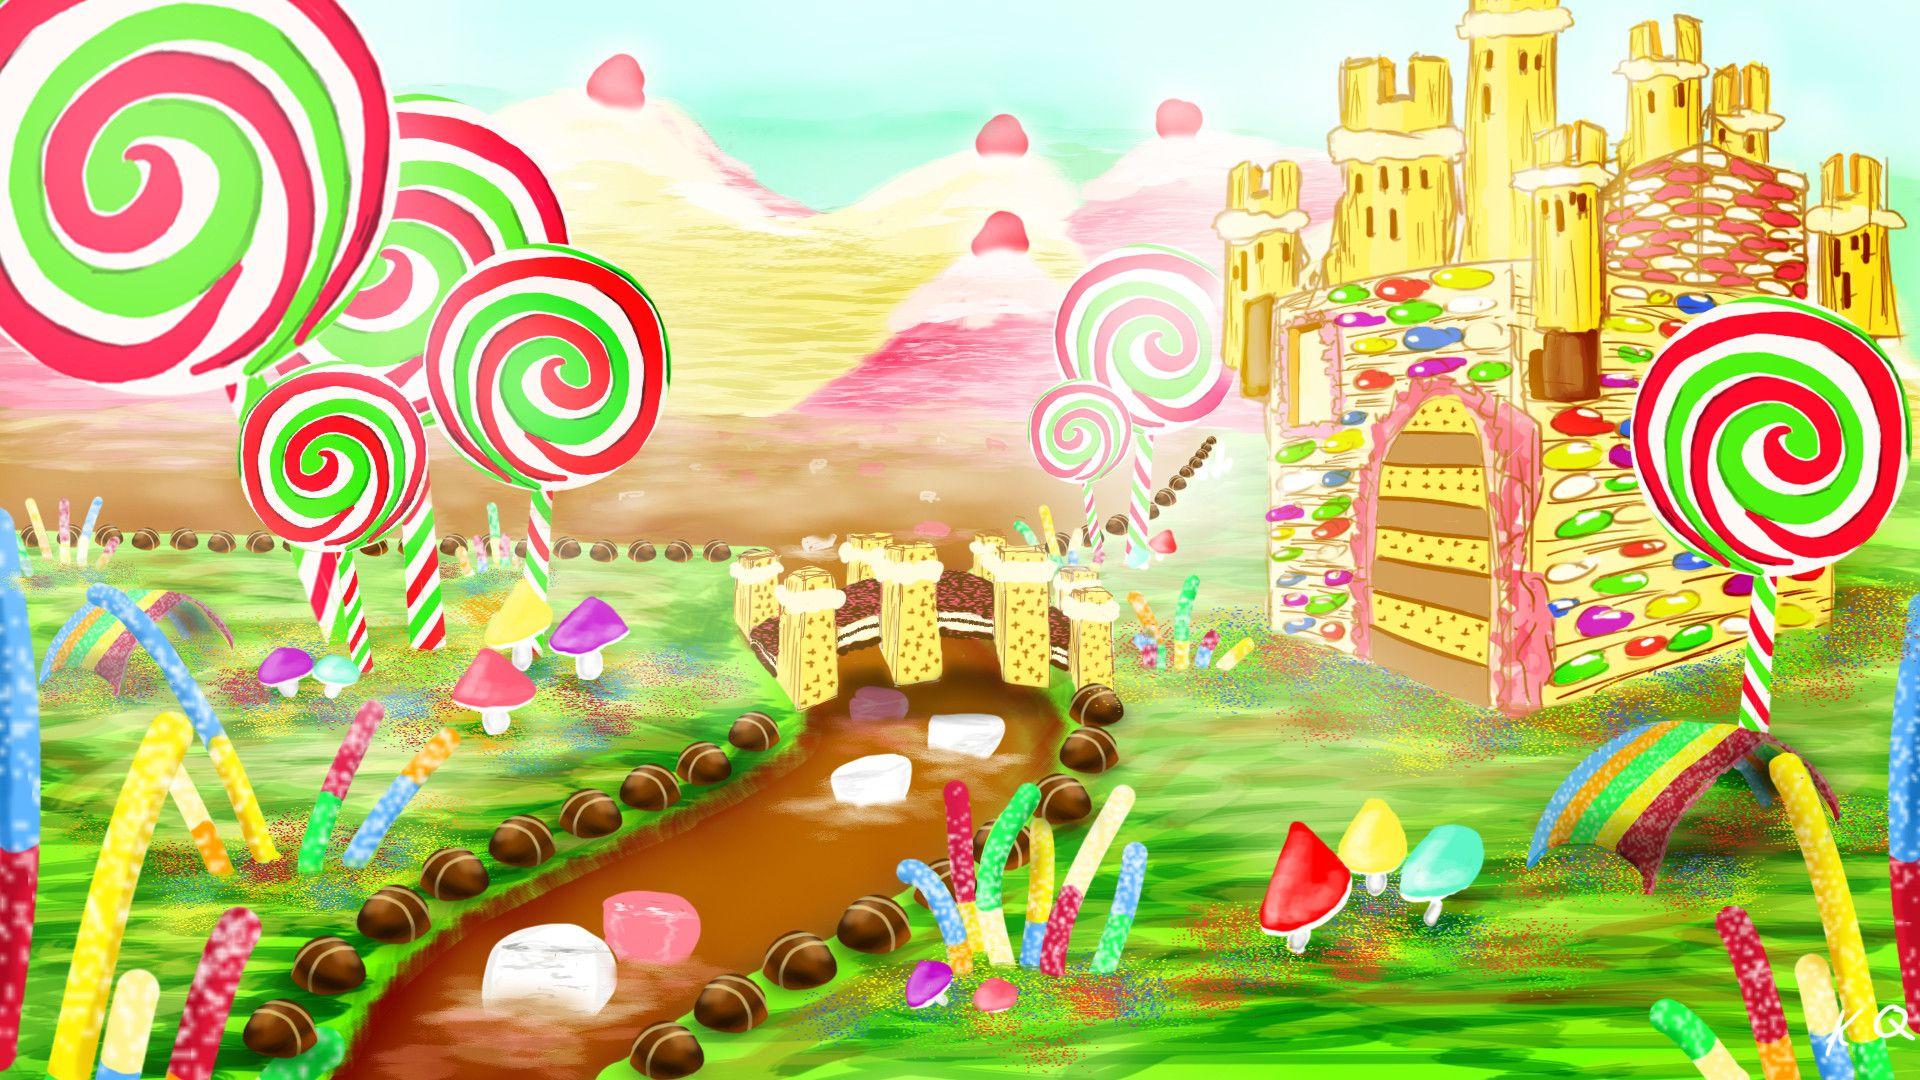 Candyland Wallpaper, Live Candyland Wallpaper, SYX193 Candyland